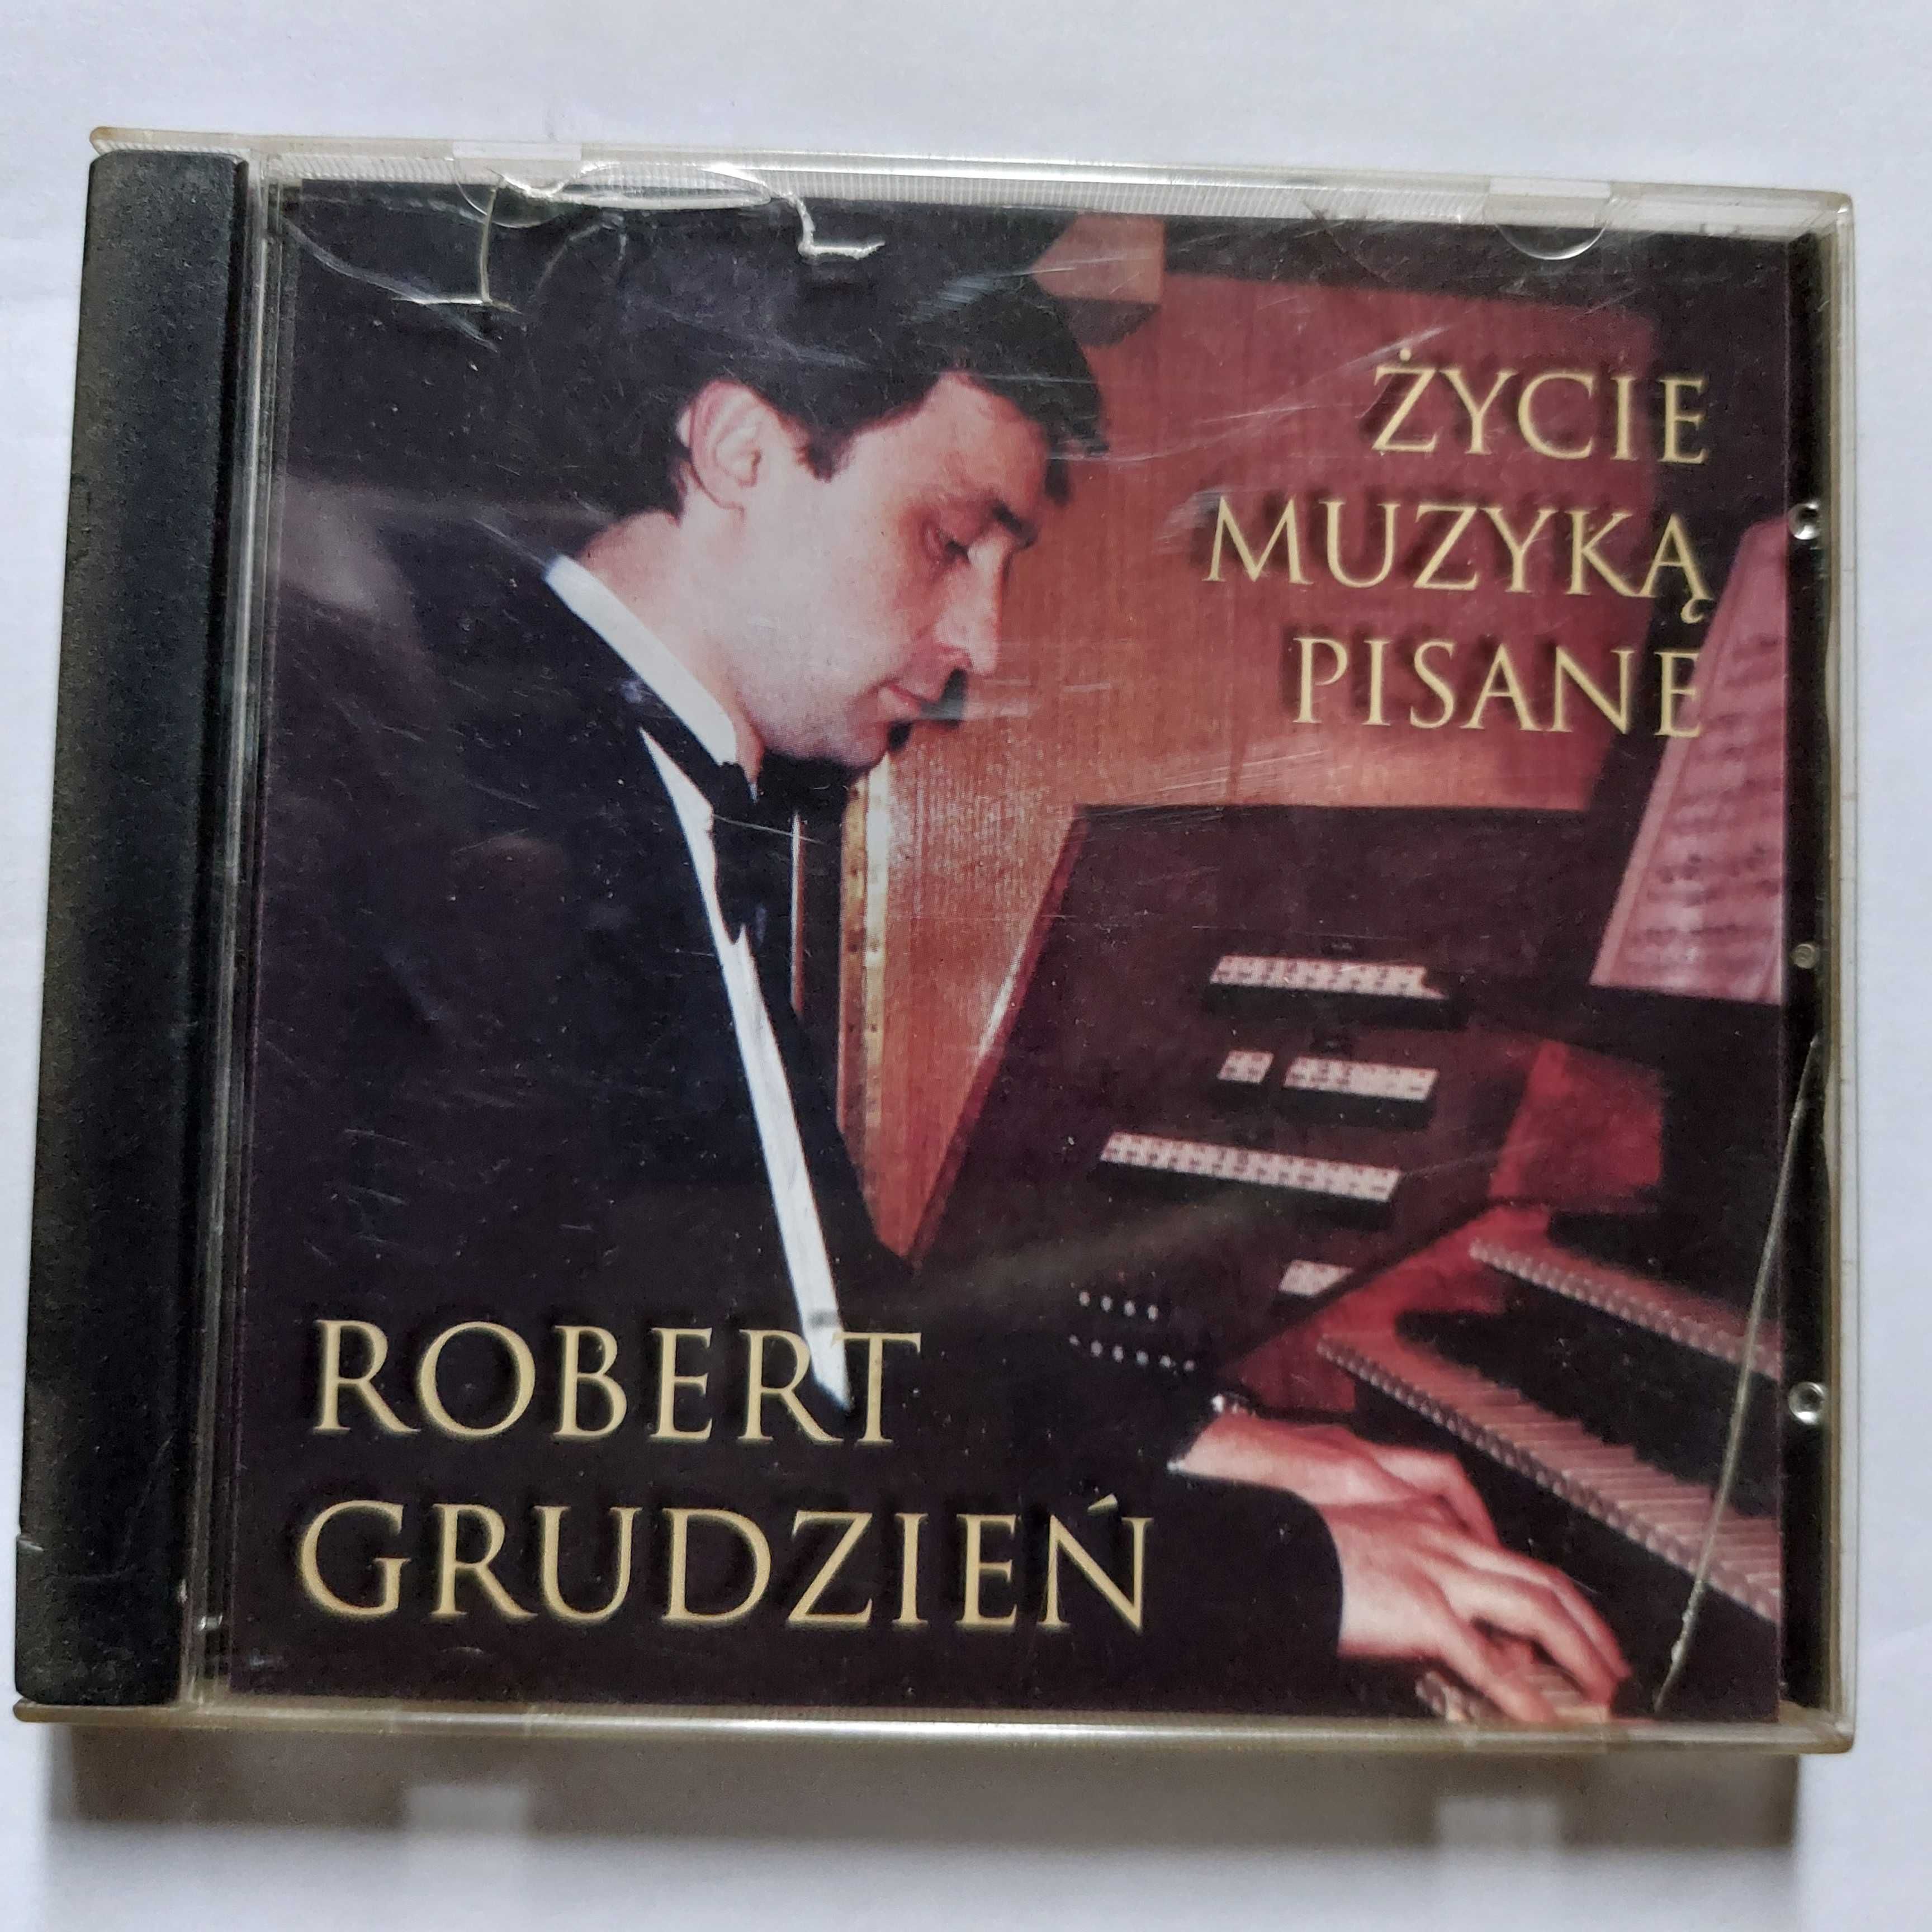 ŻYCIE MUZYKĄ PISANE - Robert Grudzień | płyta z muzyką na CD